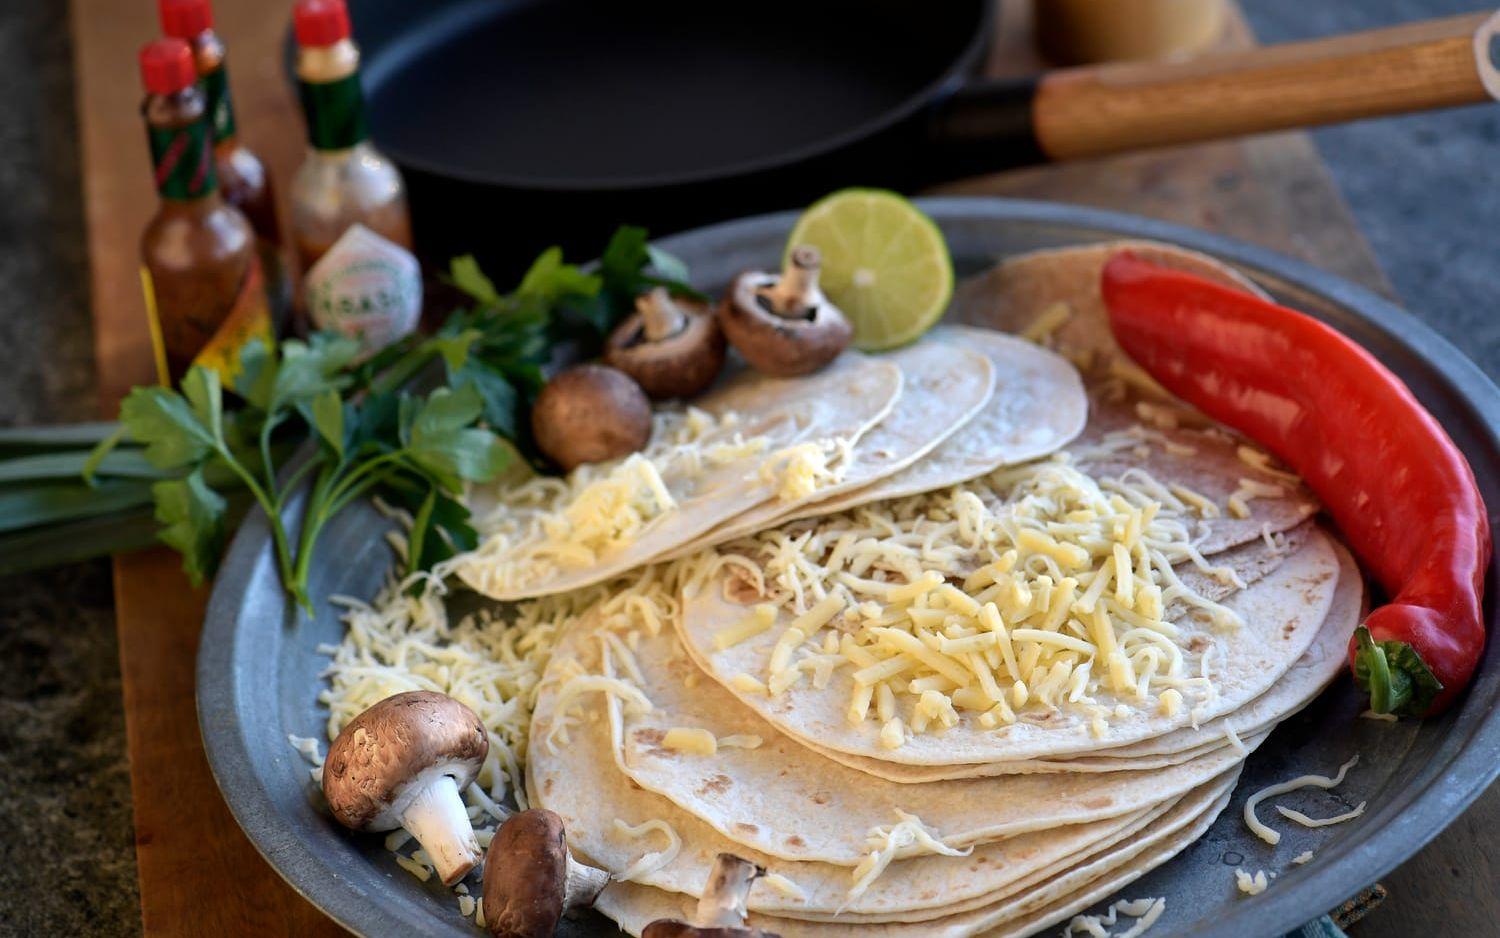 Quesadilla är en mexikansk variant på grillad ostmacka. Fast mycket läckrare än så. Foto: Janerik Henriksson/TT